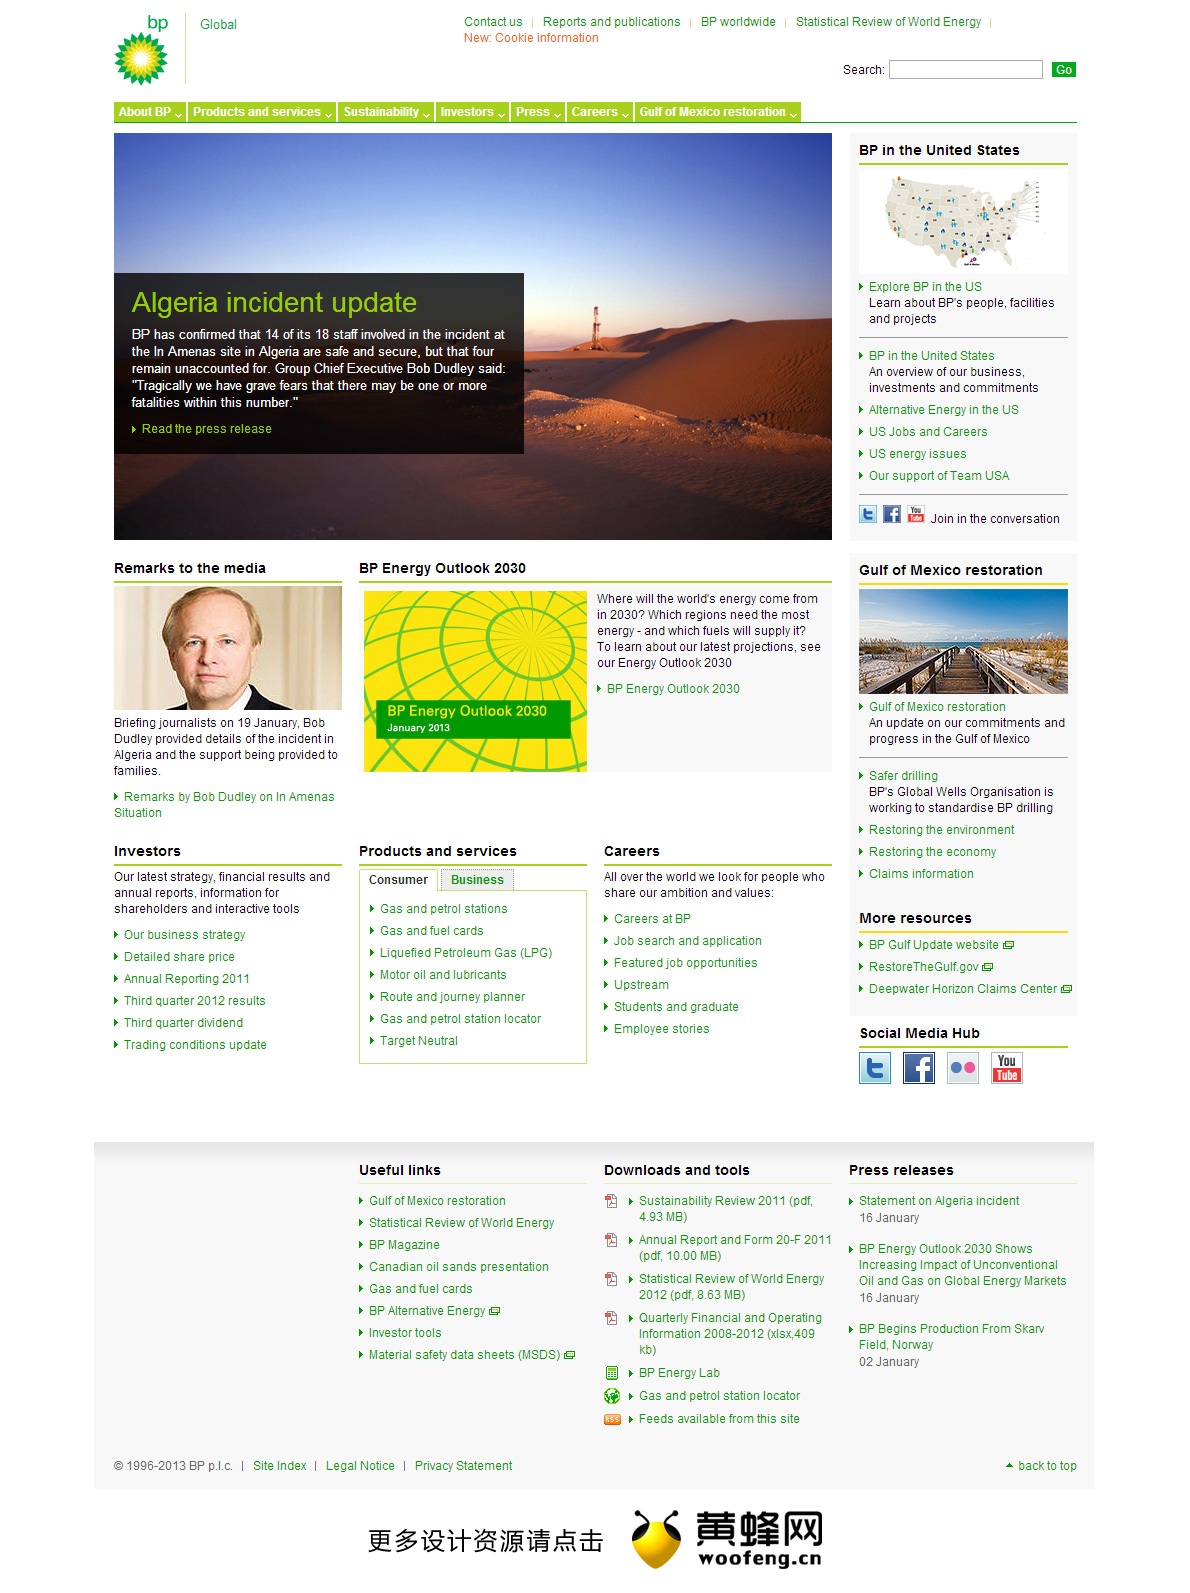 BP英国石油公司网站